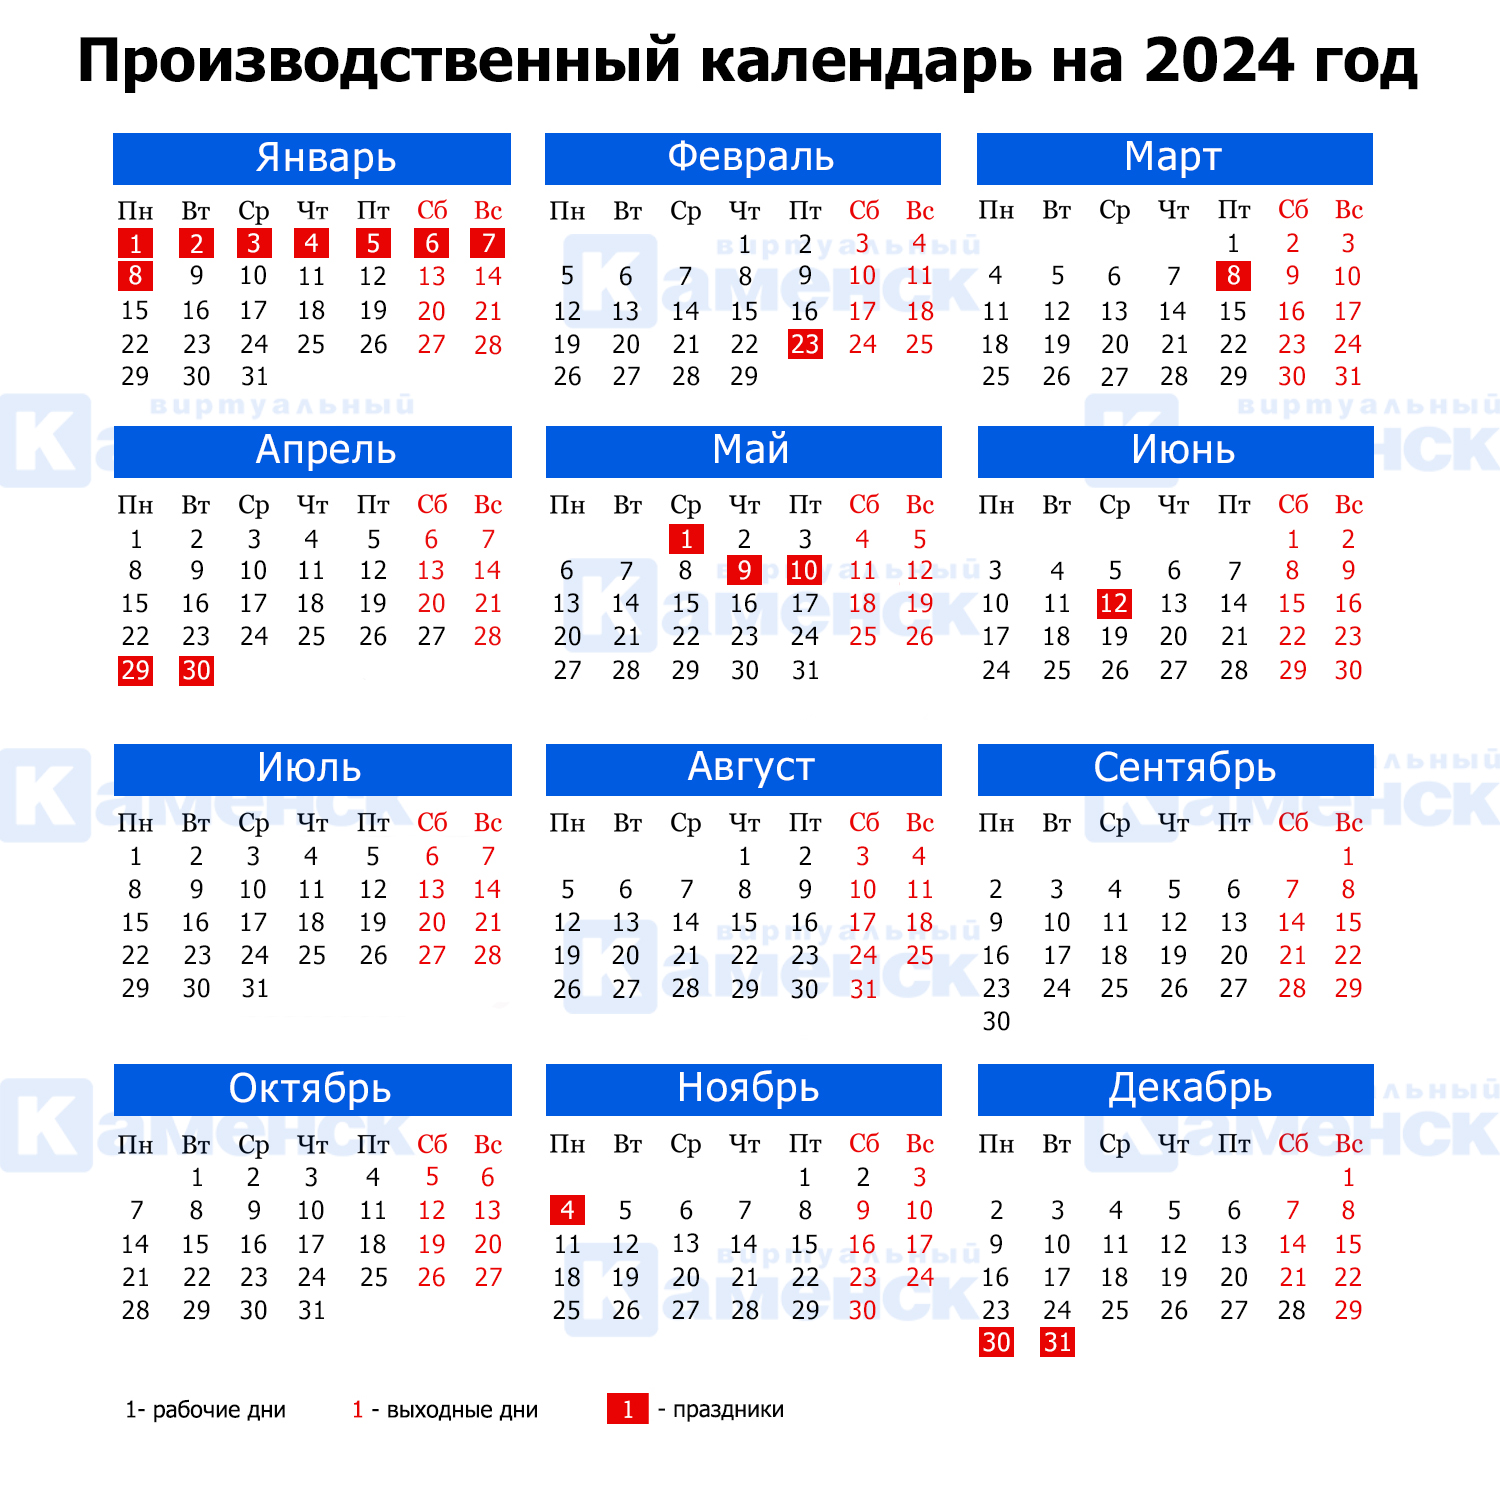 Как будем работать и отдыхать: производственный календарь на 2024 год -  Виртуальный Каменск-Уральский